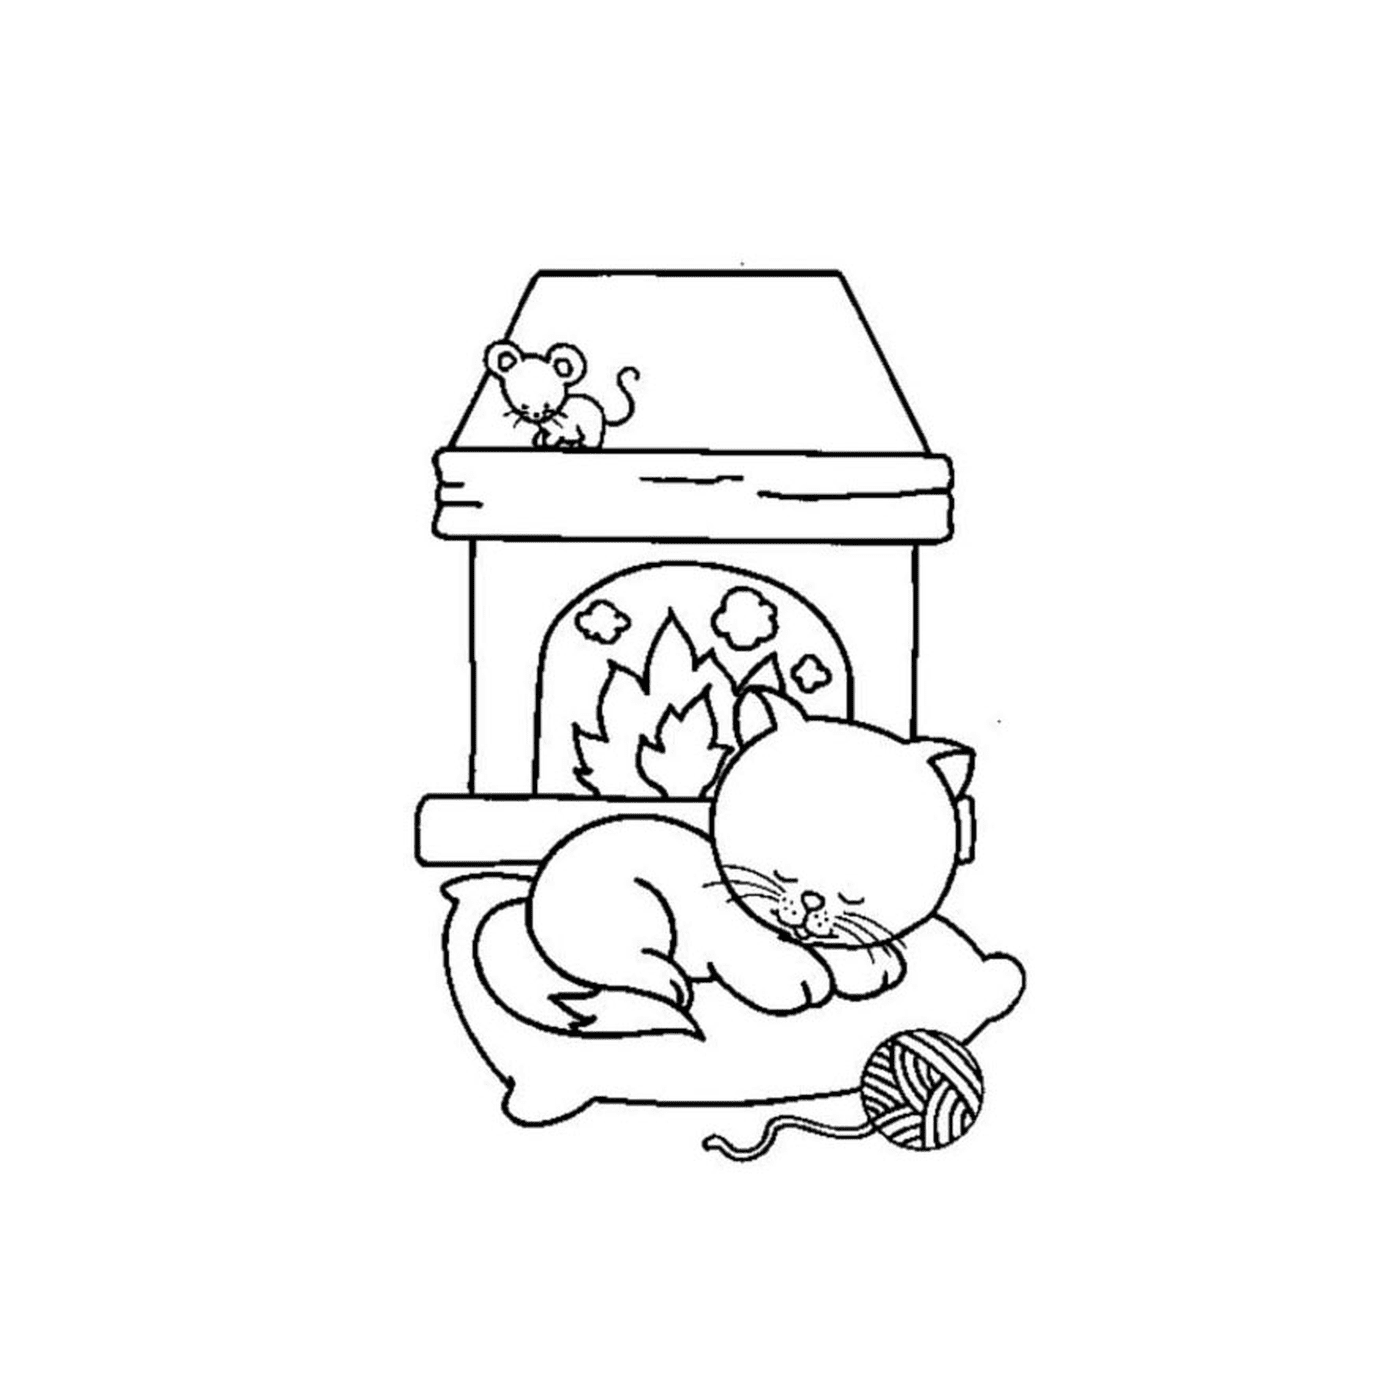  Кошка, спящая рядом с мышкой 